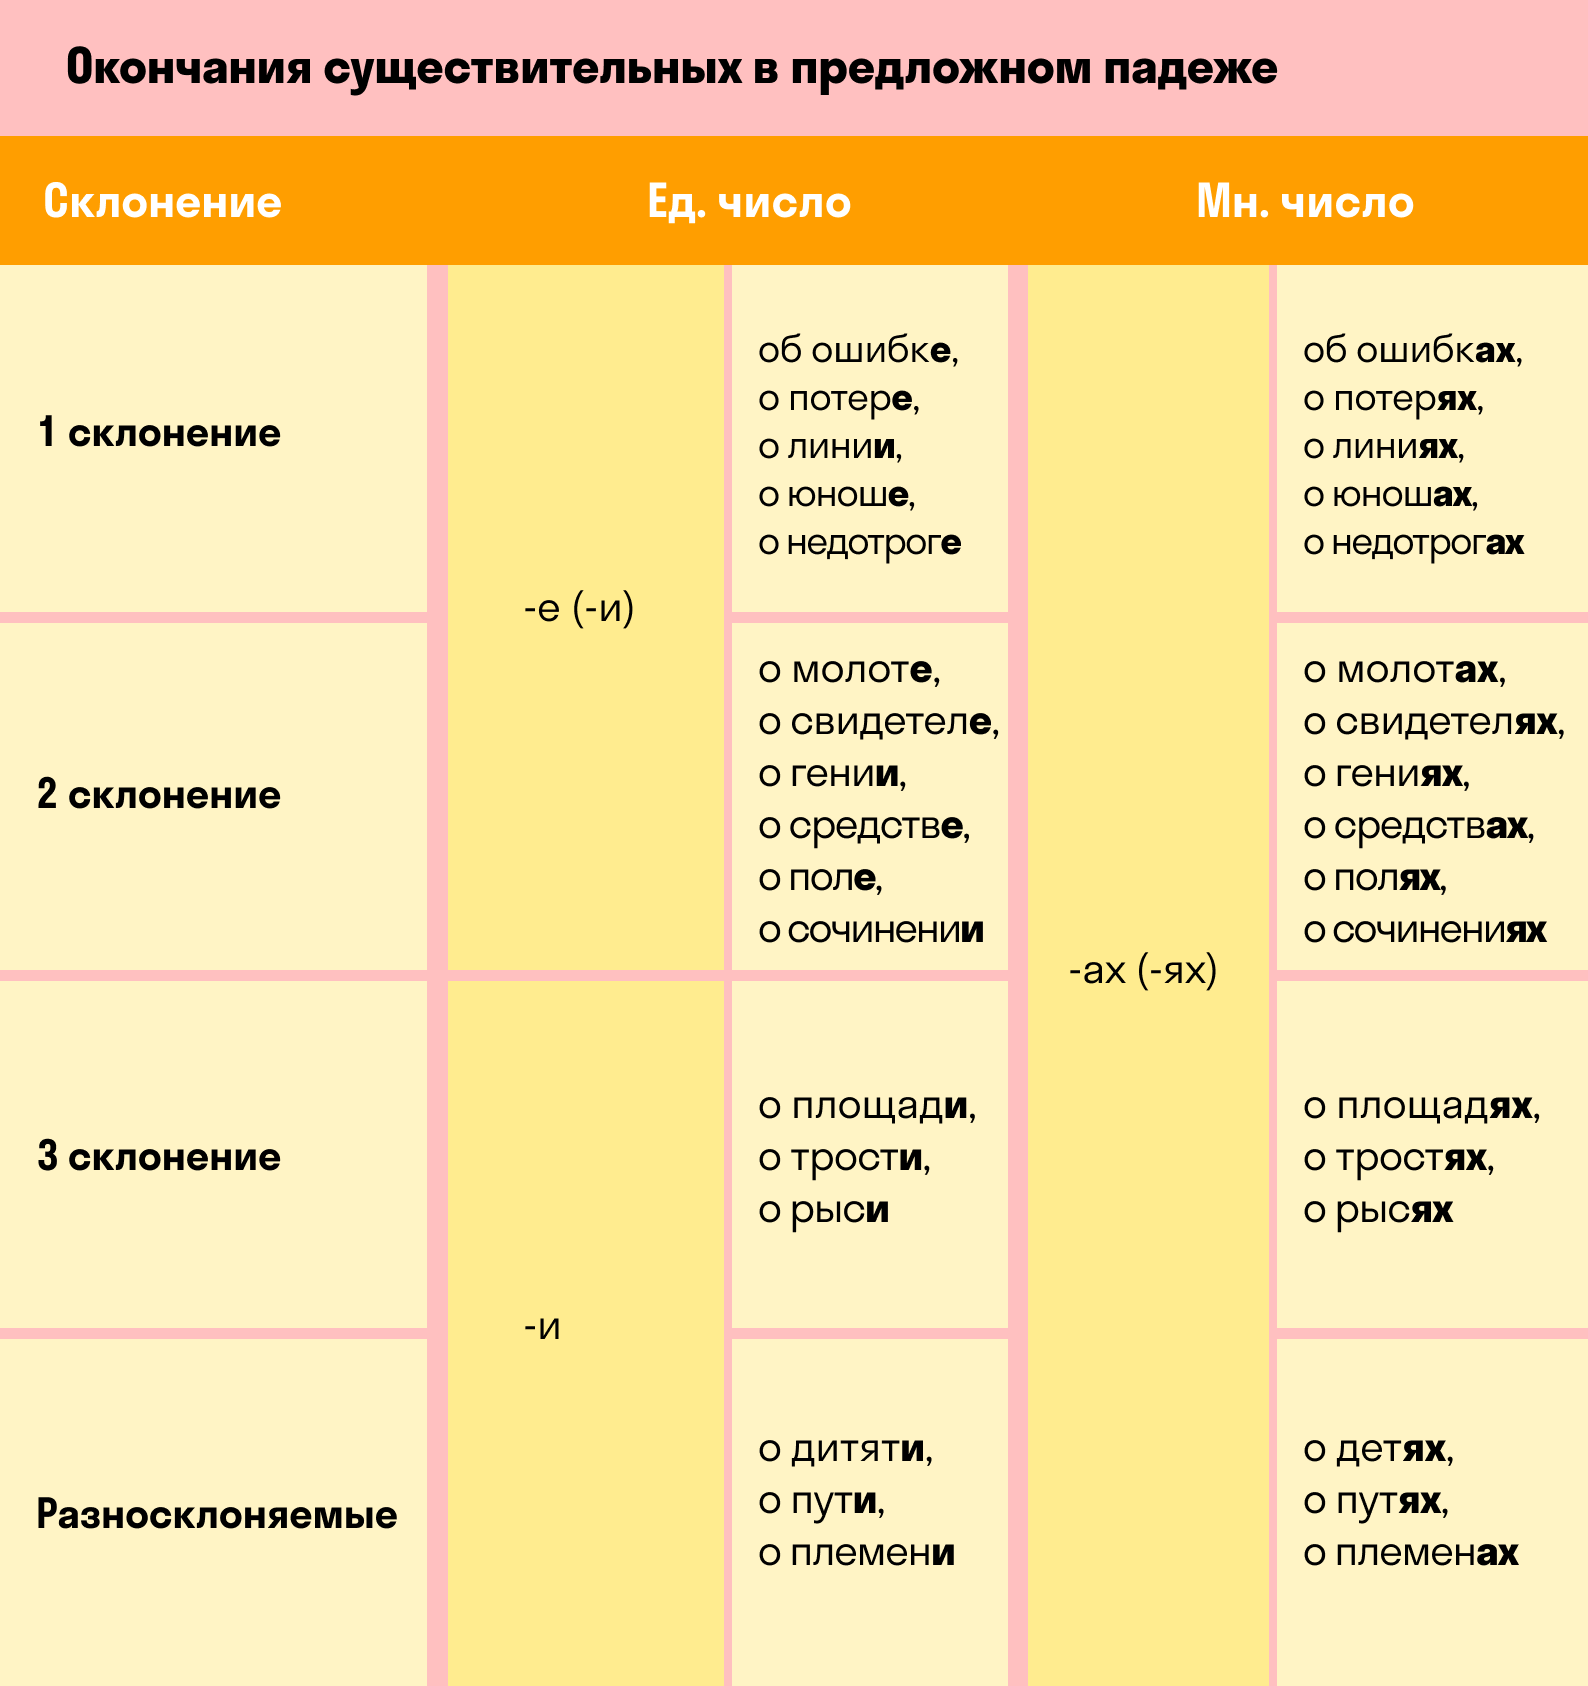 Родительный падеж предлоги русского языка